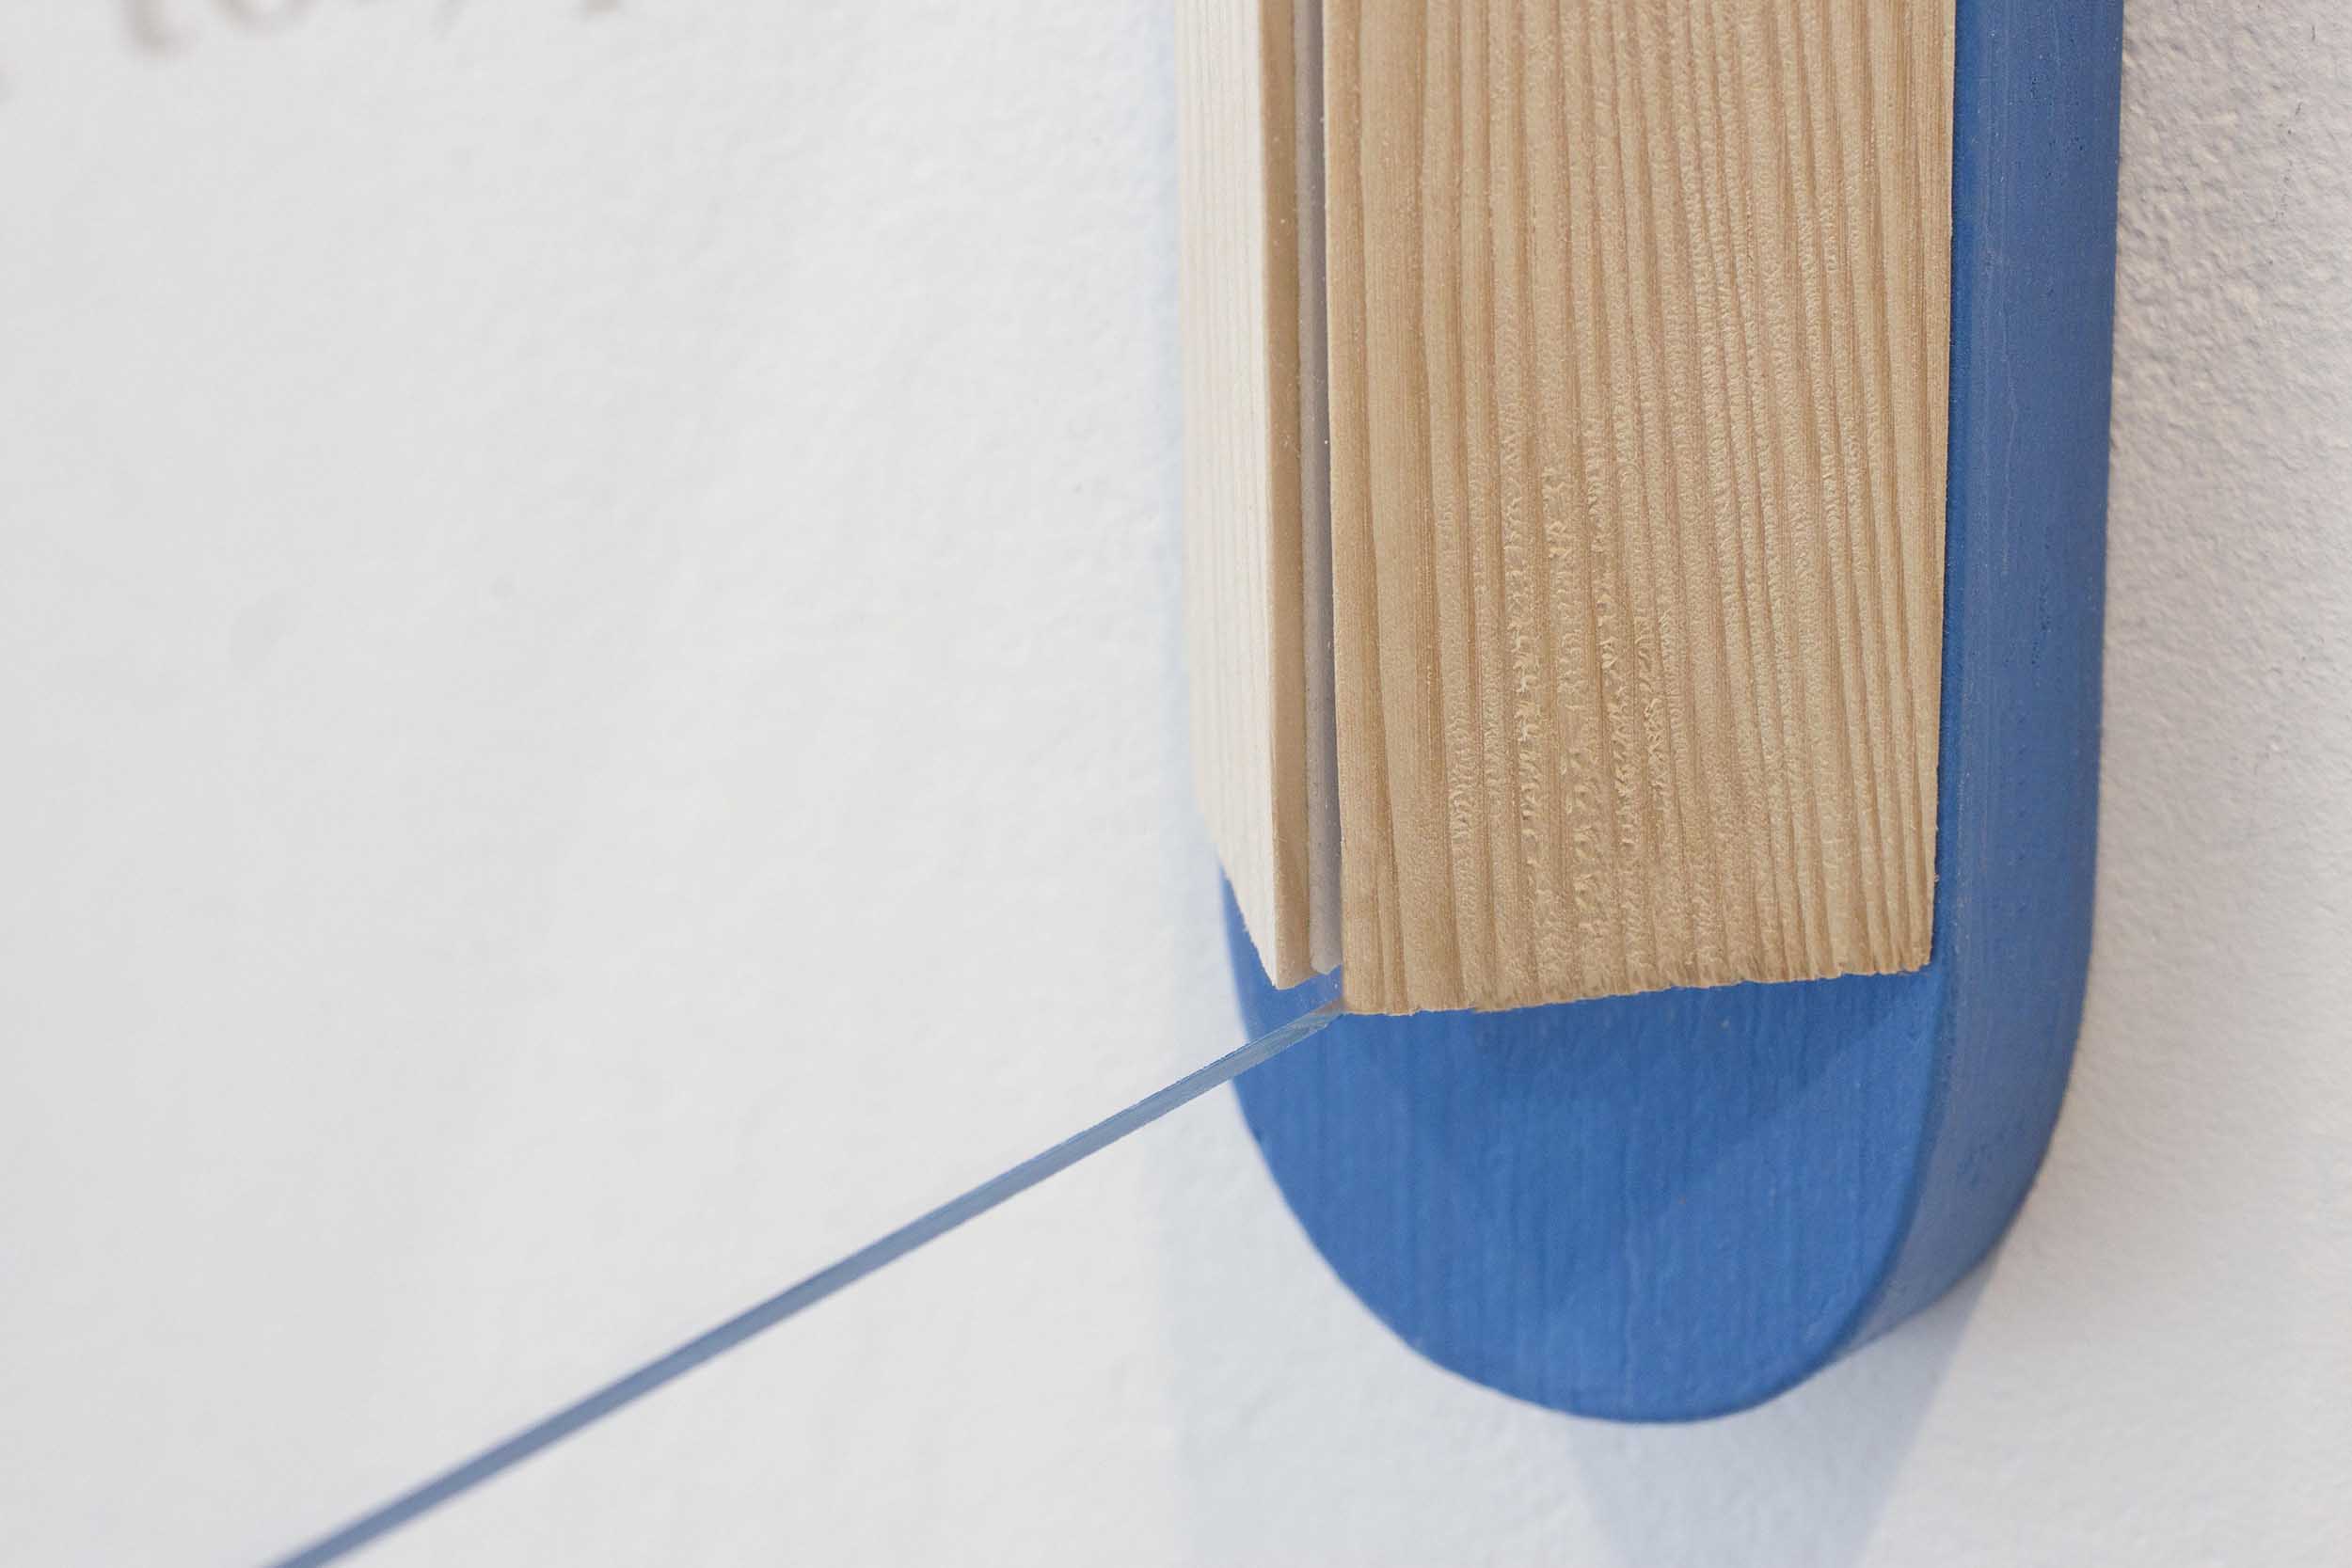 Vue de détail sur la fixation des plexiglas sur tranche bois